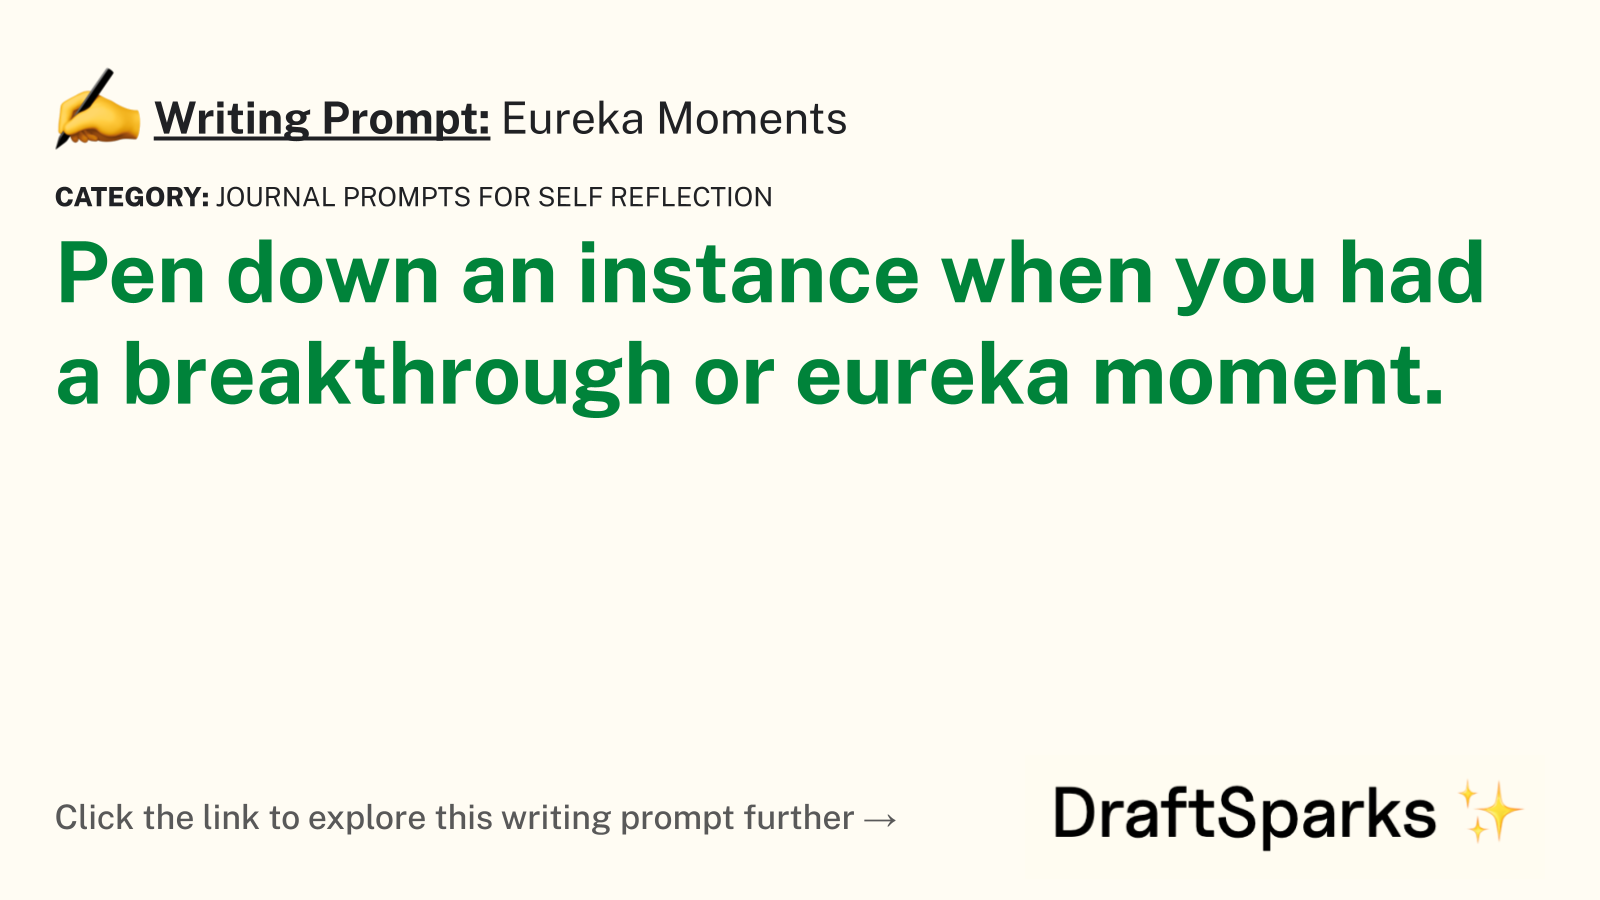 Eureka Moments